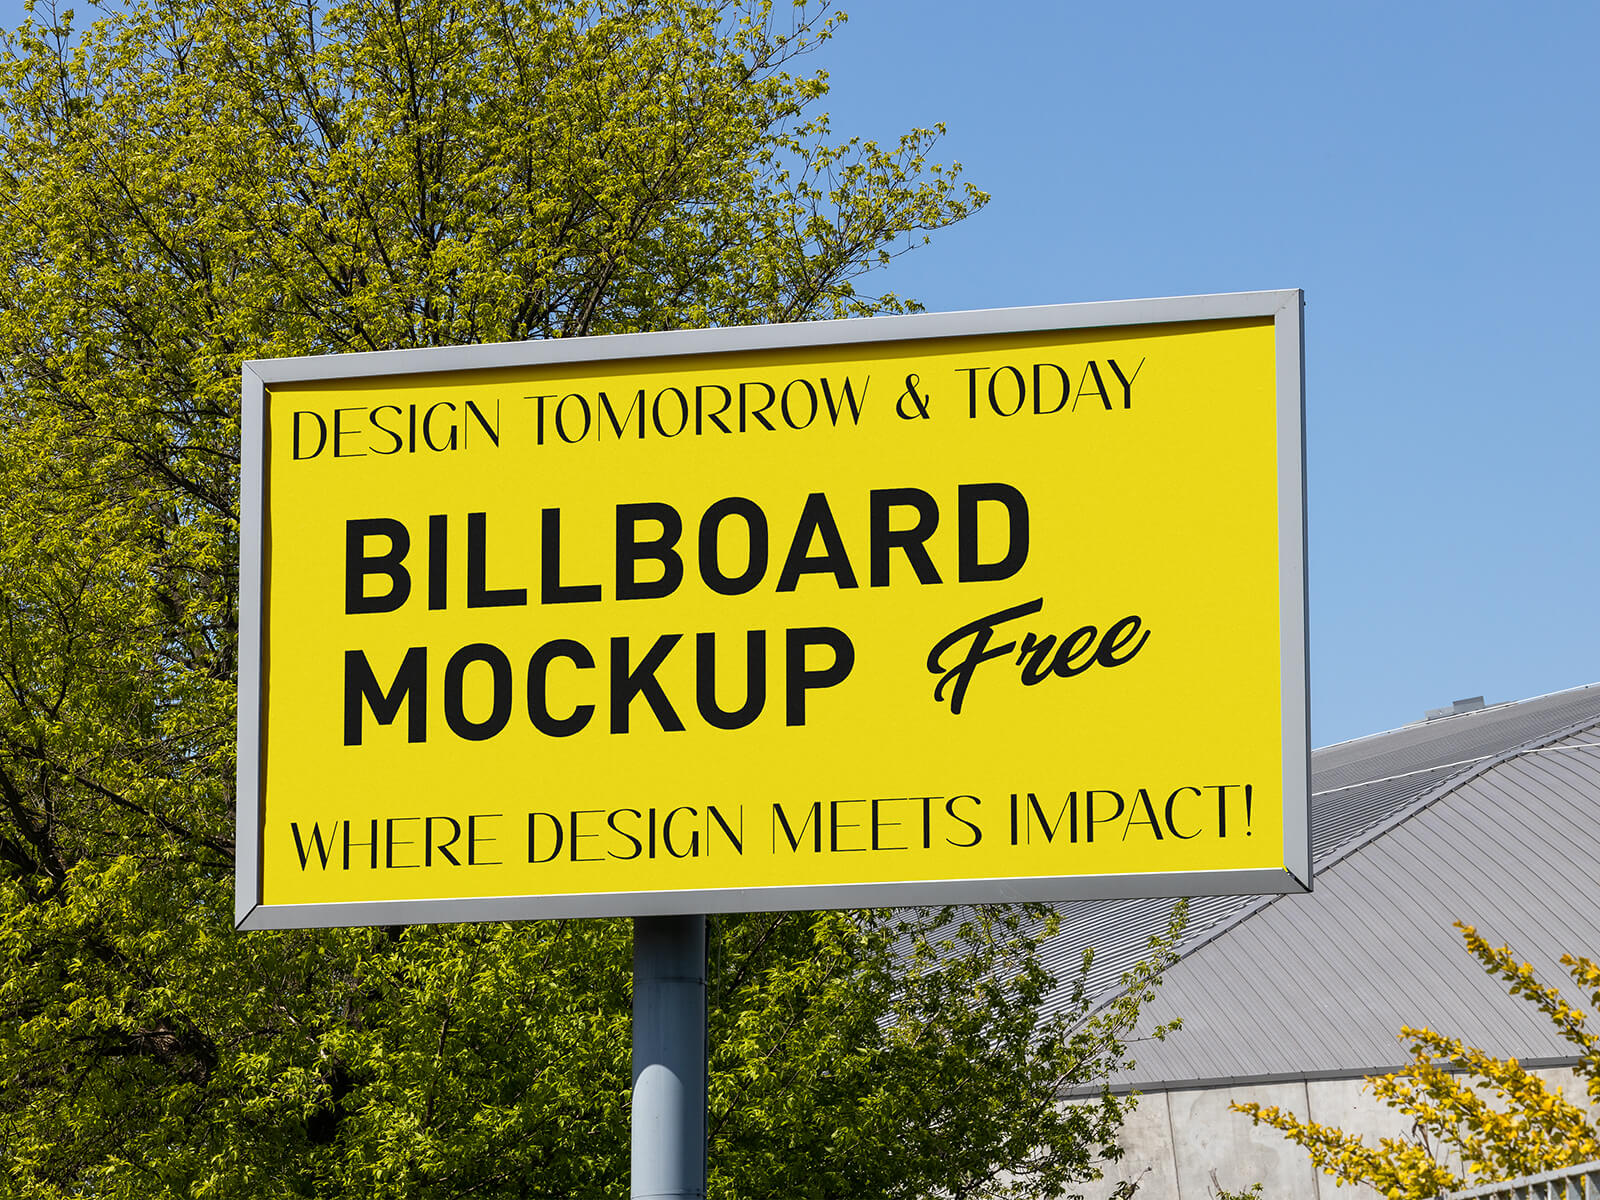 Free-Daylight-Street-Billboard-Mockup-PSD